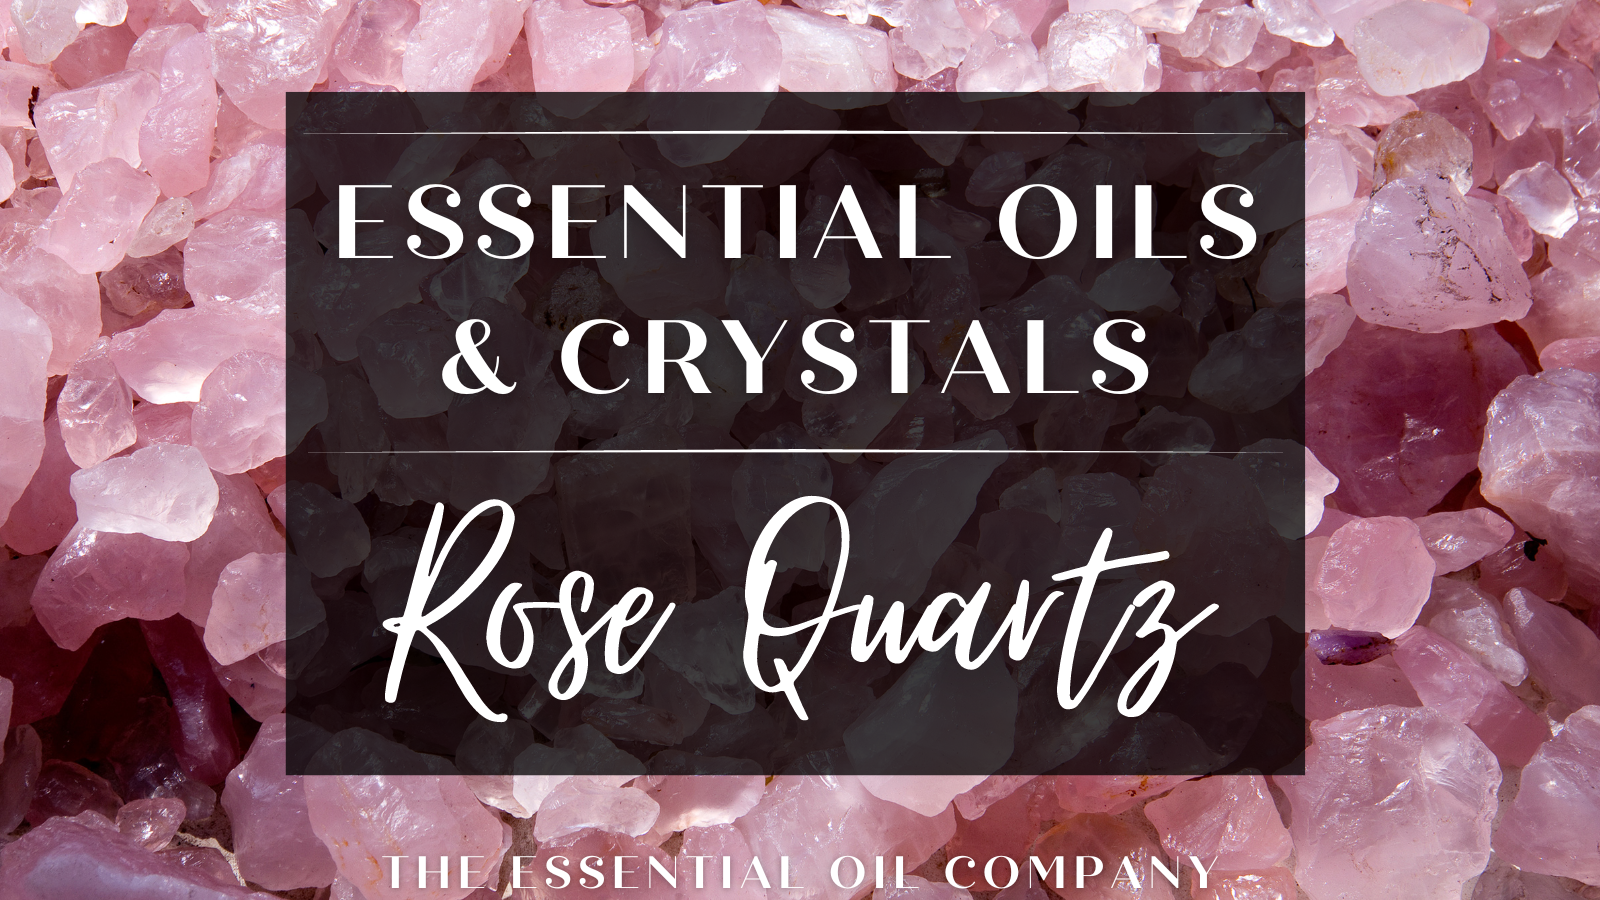 Essential Oils & Crystals: Rose Quartz